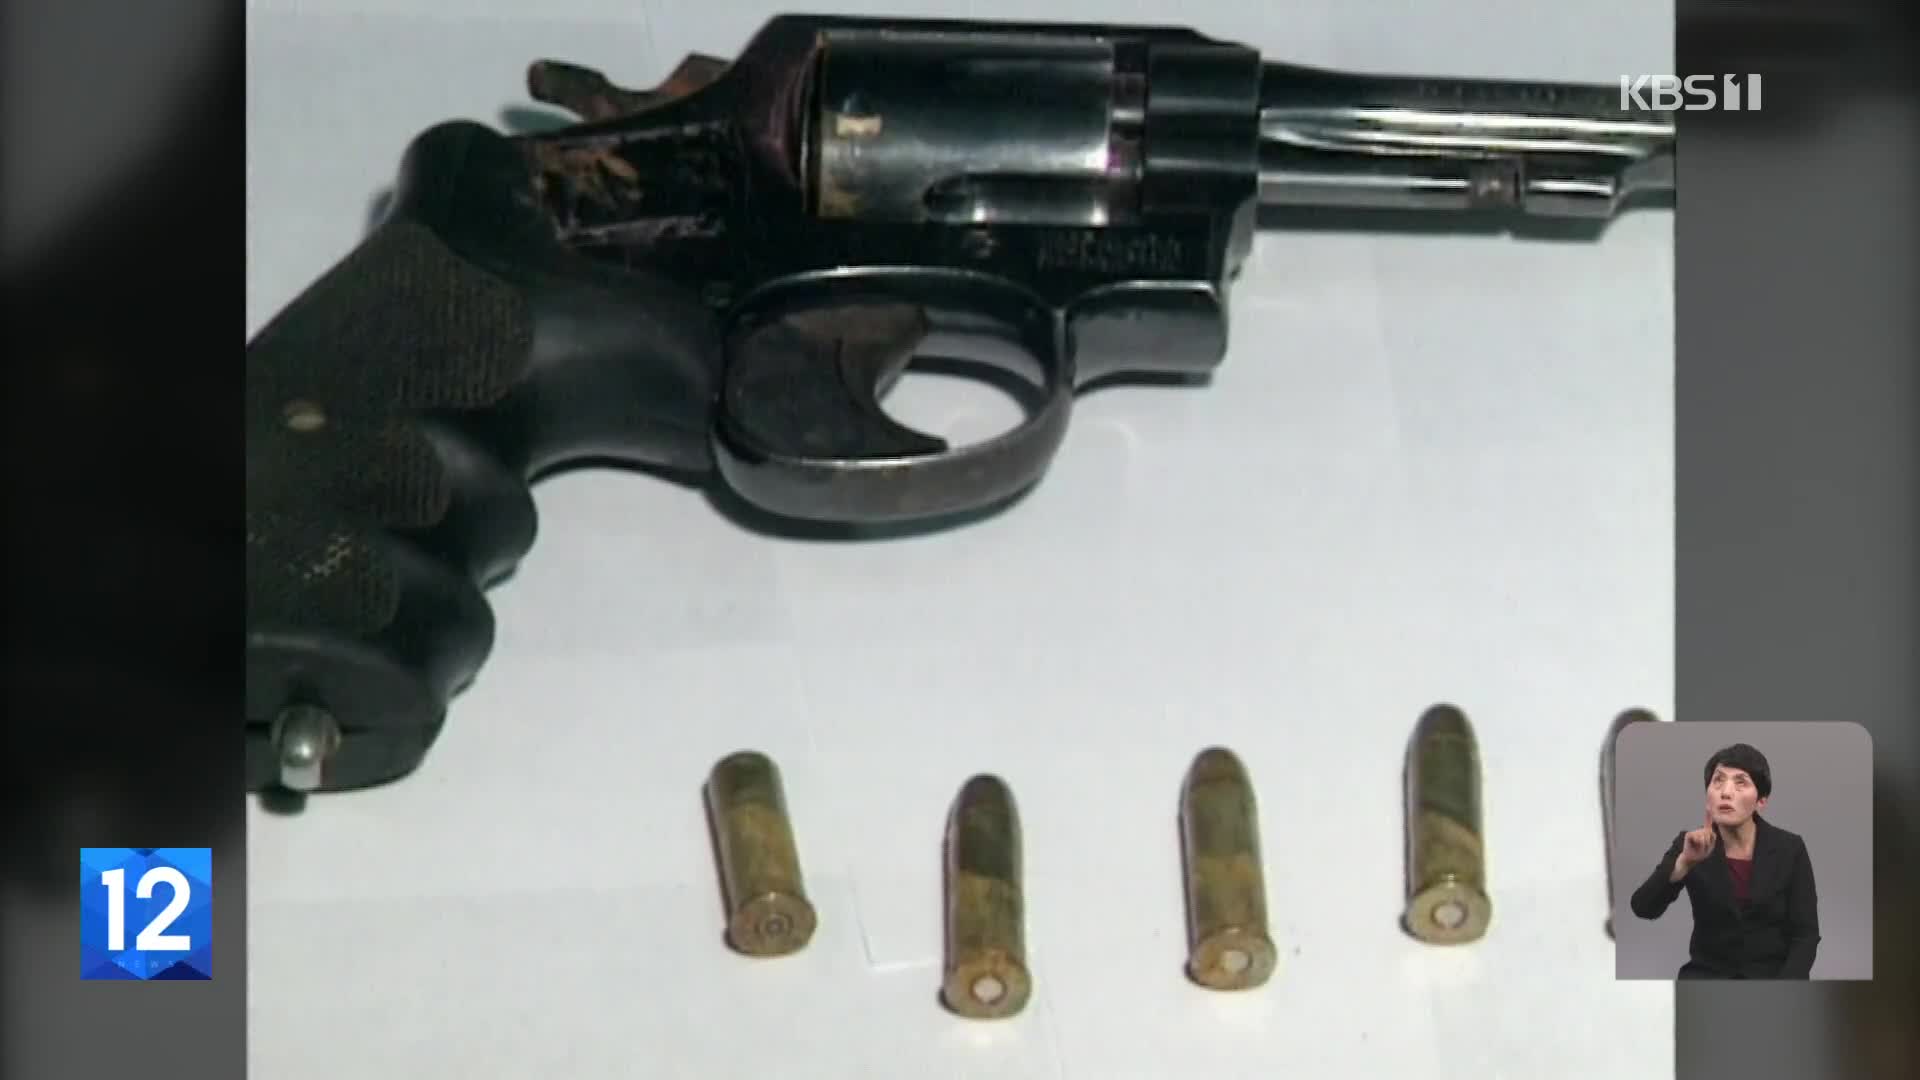 백 경사 피살사건 ‘사라진 총’…21년 만에 발견